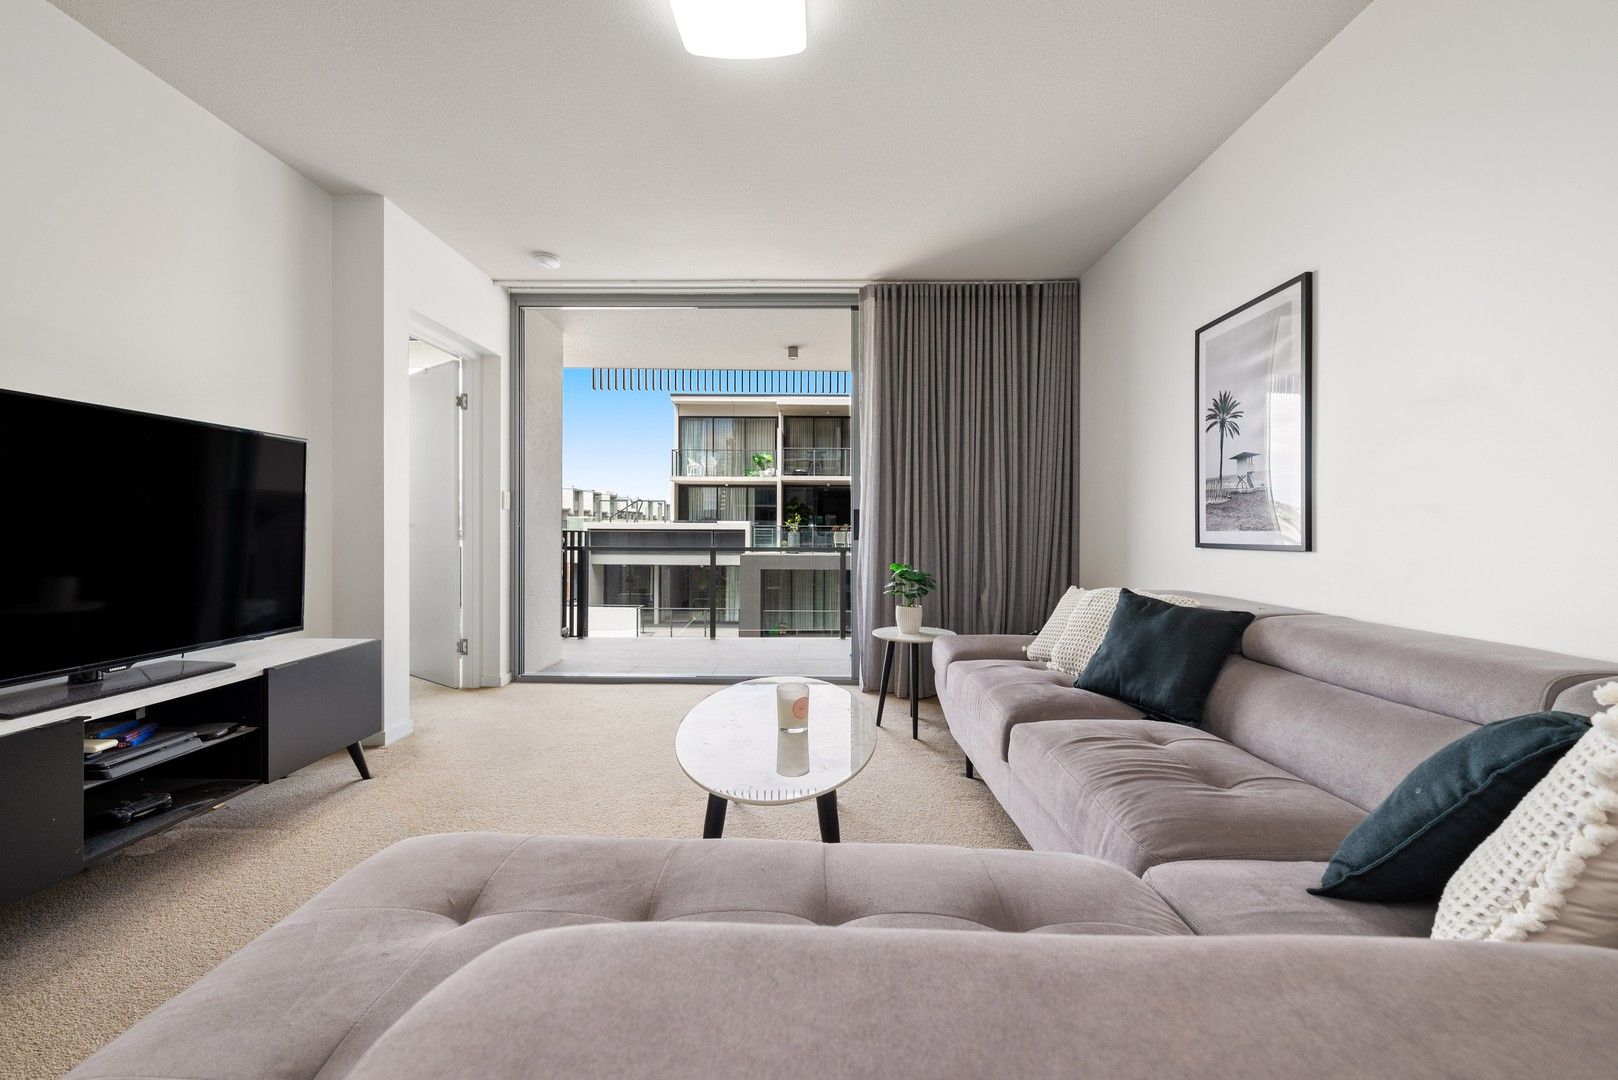 2 bedrooms Apartment / Unit / Flat in 708/53 Wyandra Street TENERIFFE QLD, 4005